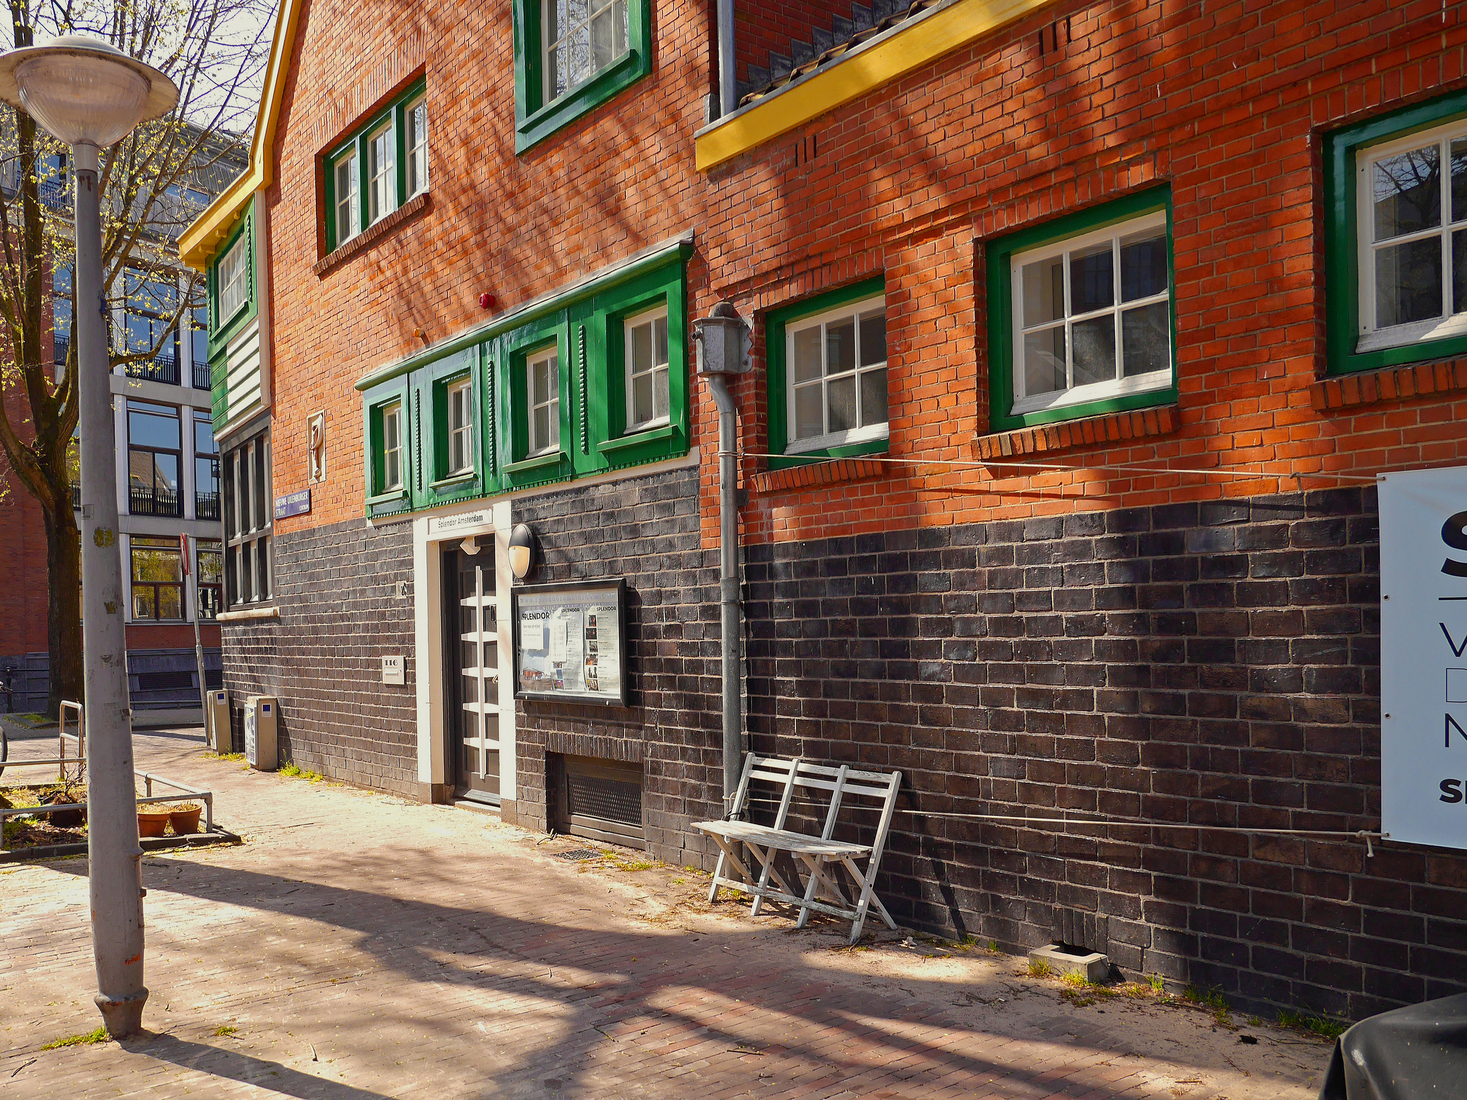 Kleurige architectuur van het voormalige badhuis in de zon, op de hoek van de Nieuwe Uilenburgerstraat